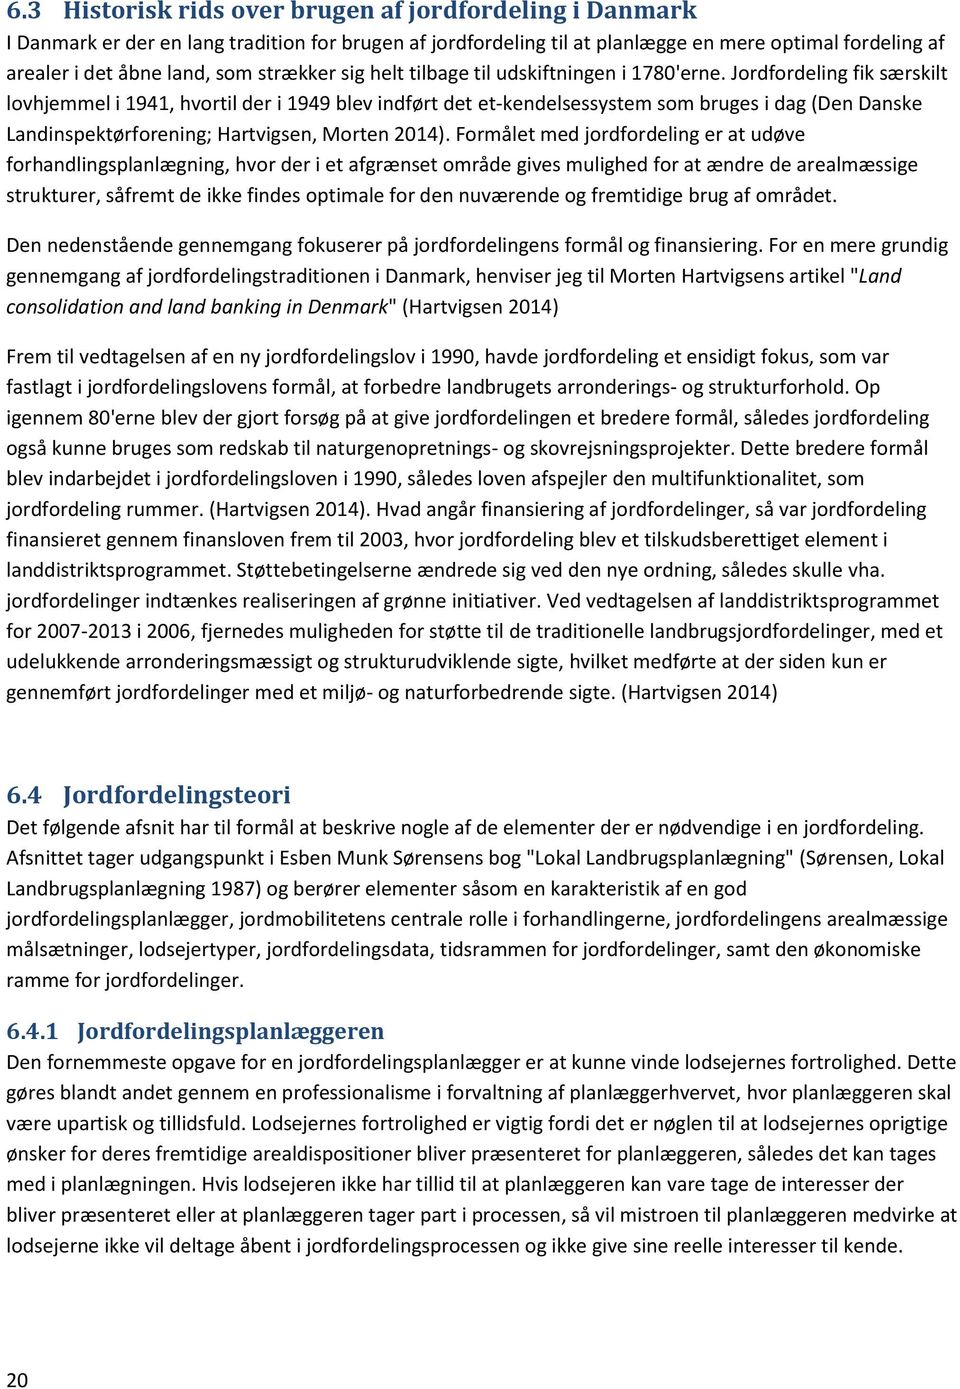 Jordfordeling fik særskilt lovhjemmel i 1941, hvortil der i 1949 blev indført det et-kendelsessystem som bruges i dag (Den Danske Landinspektørforening; Hartvigsen, Morten 2014).